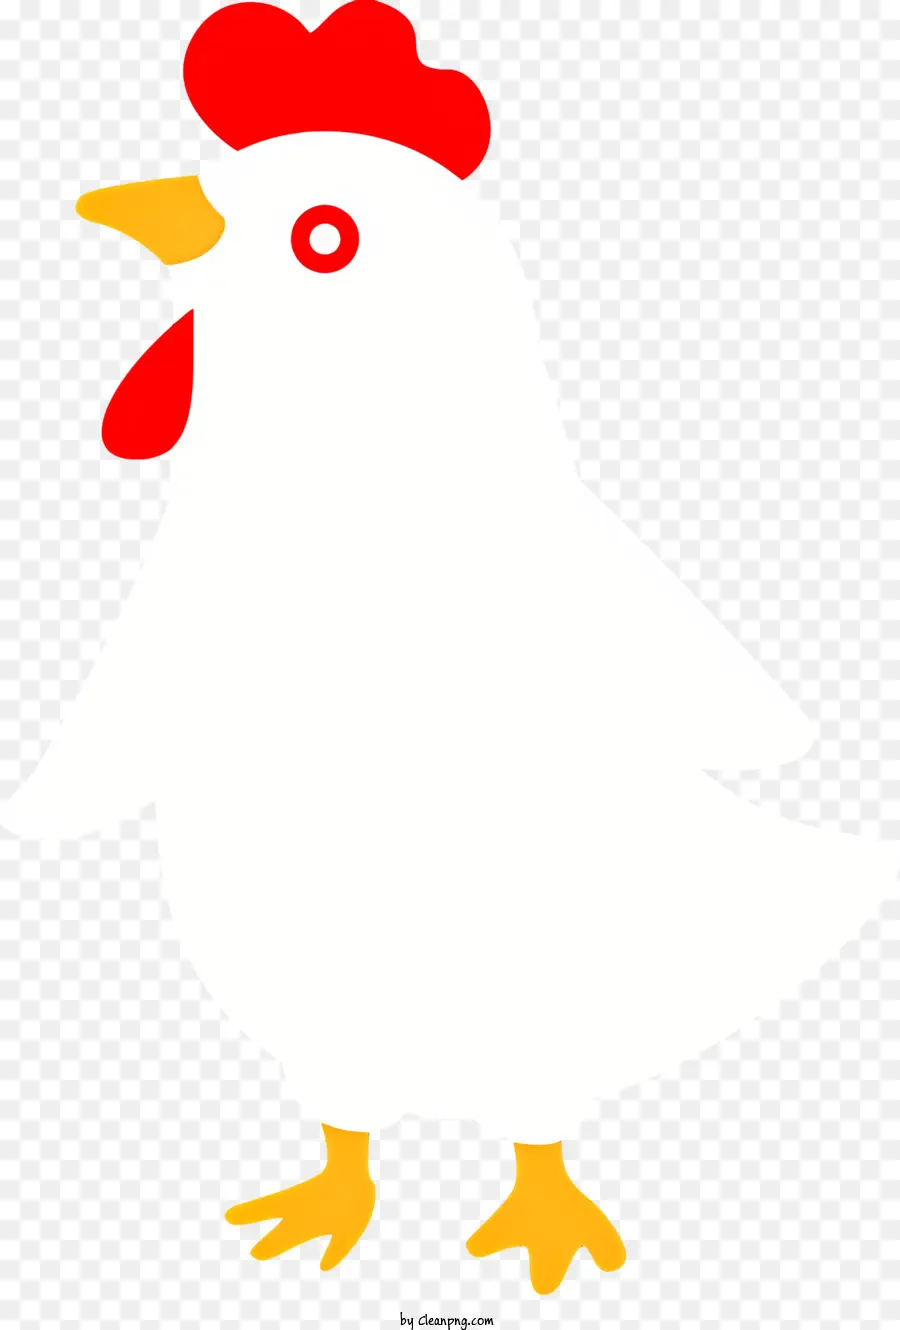 gà hoạt hình gà trắng gà đỏ gà với gà đen với cổ áo vàng - Gà hoạt hình với mỏ đỏ mặc cổ áo